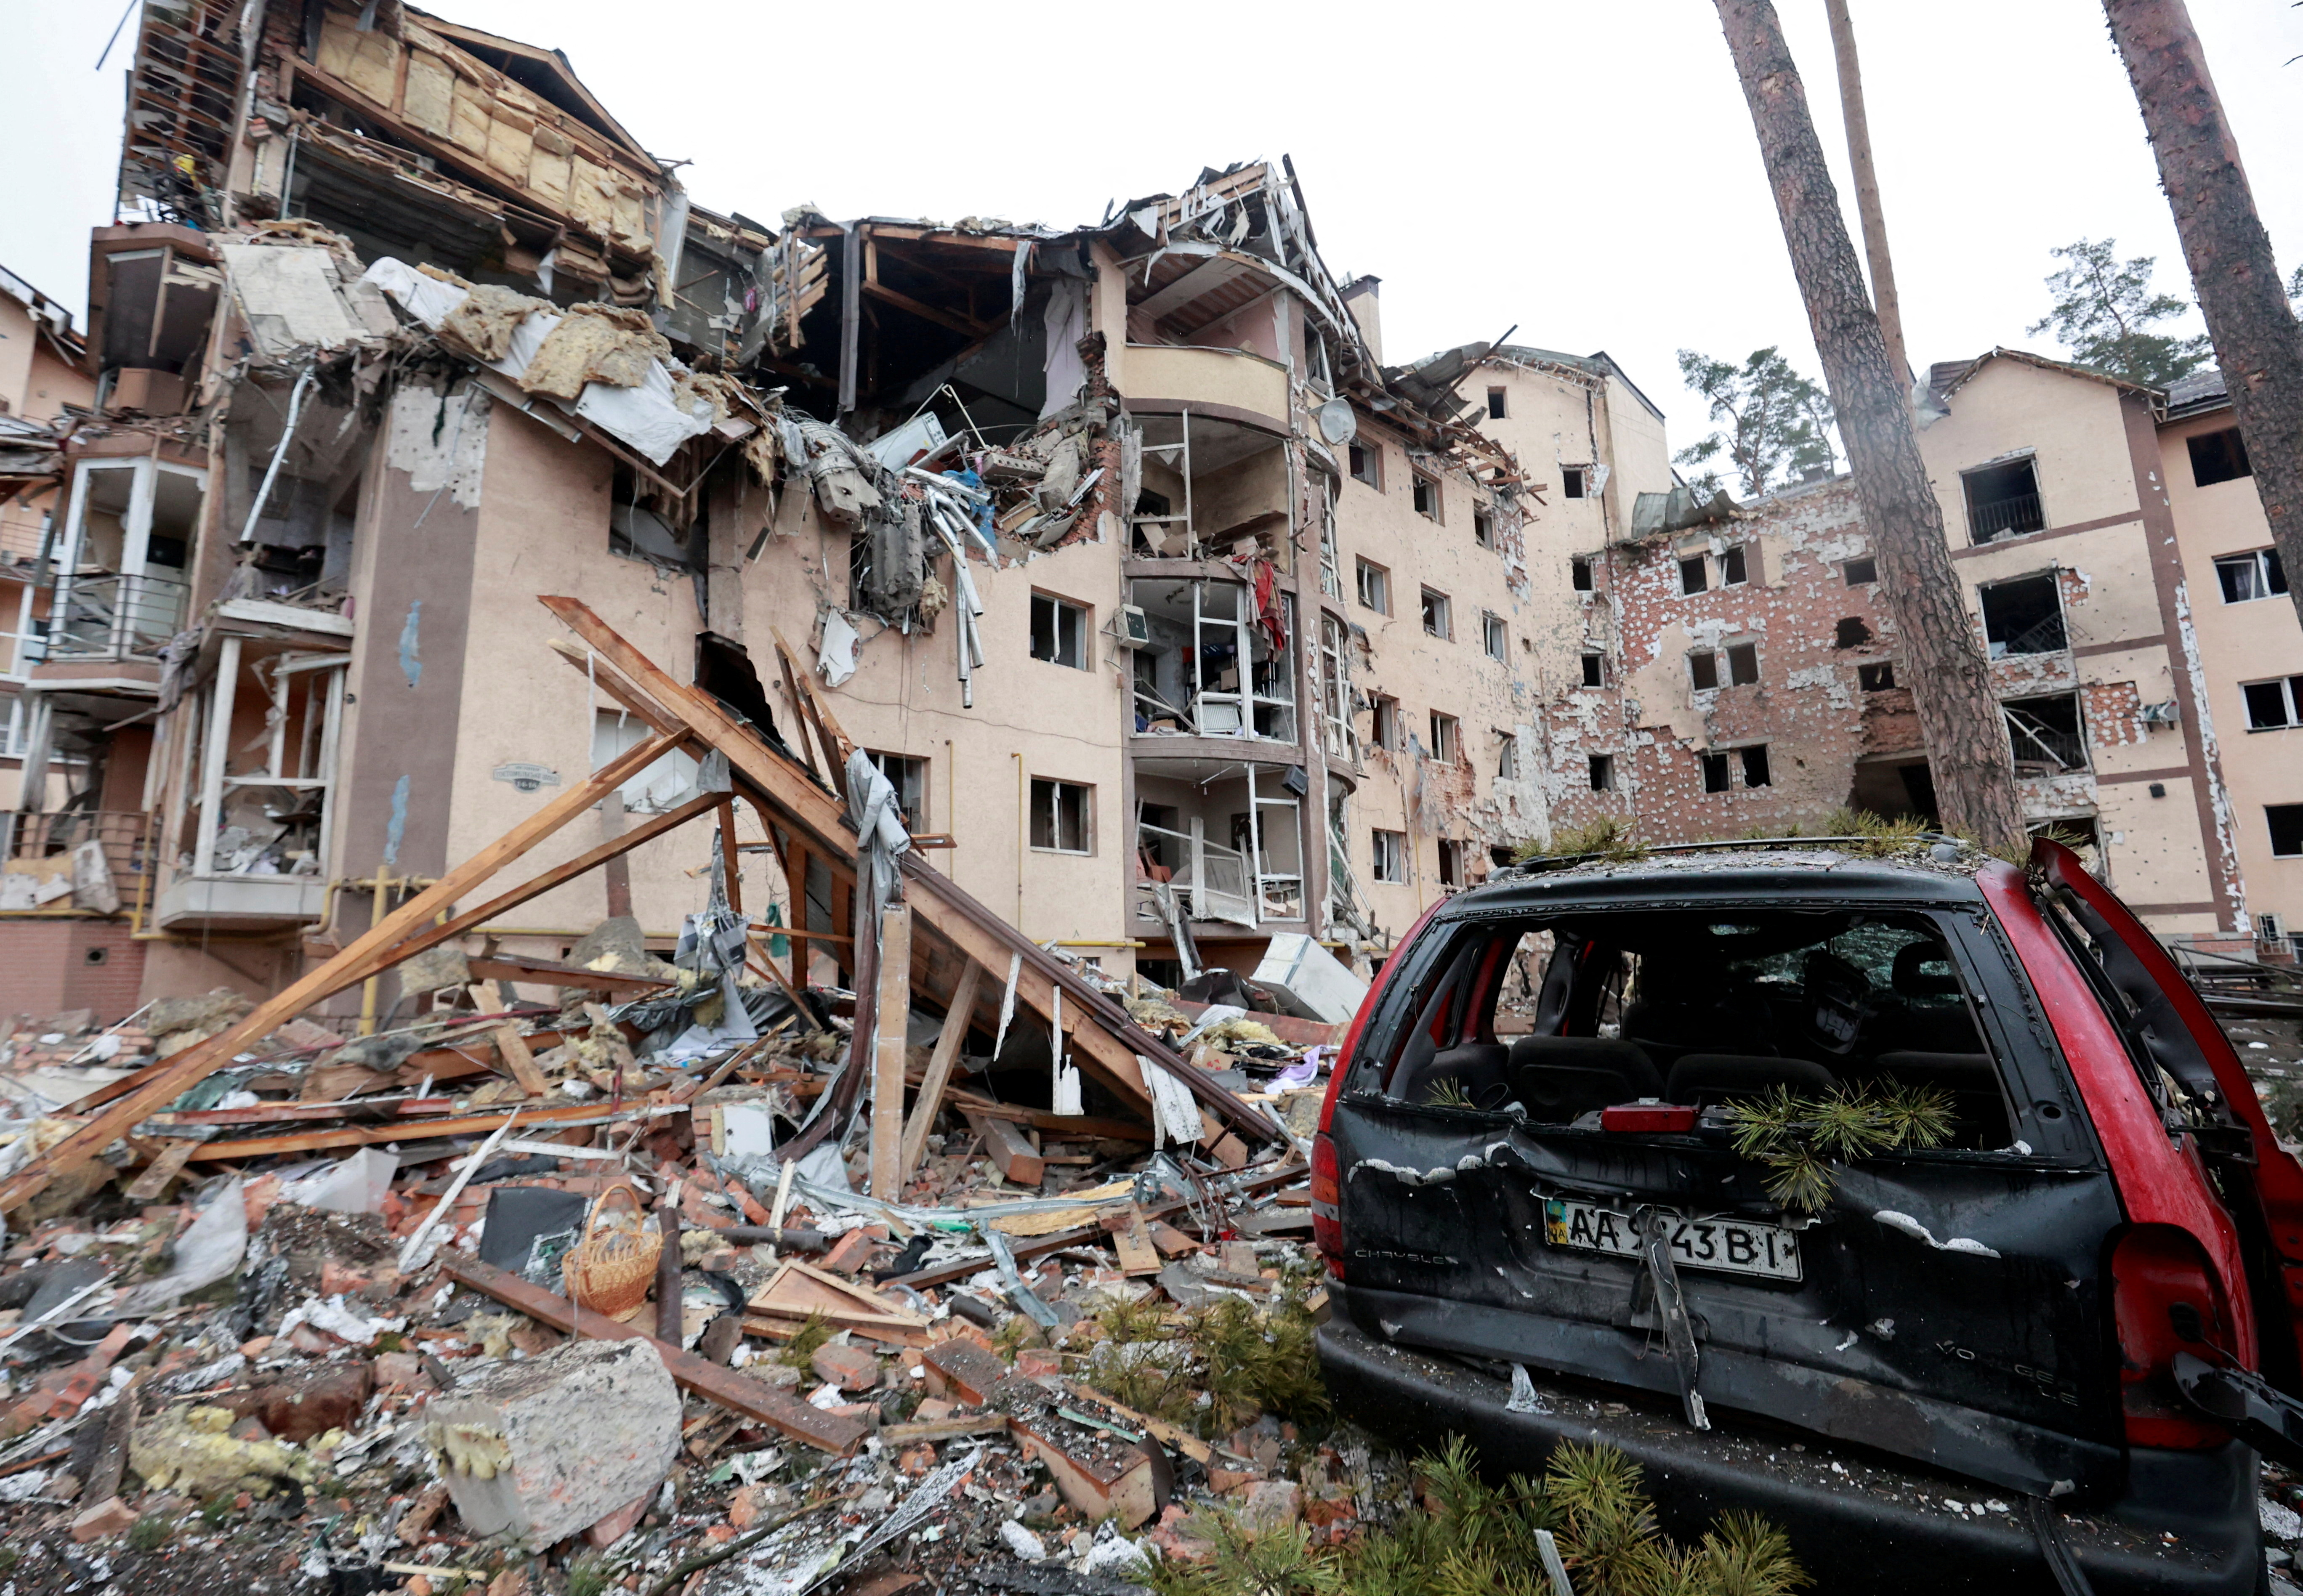 Здание разрушенное взрывом. Разрушенное здание. Разрушенные здания в Украине. Разрушенный город.